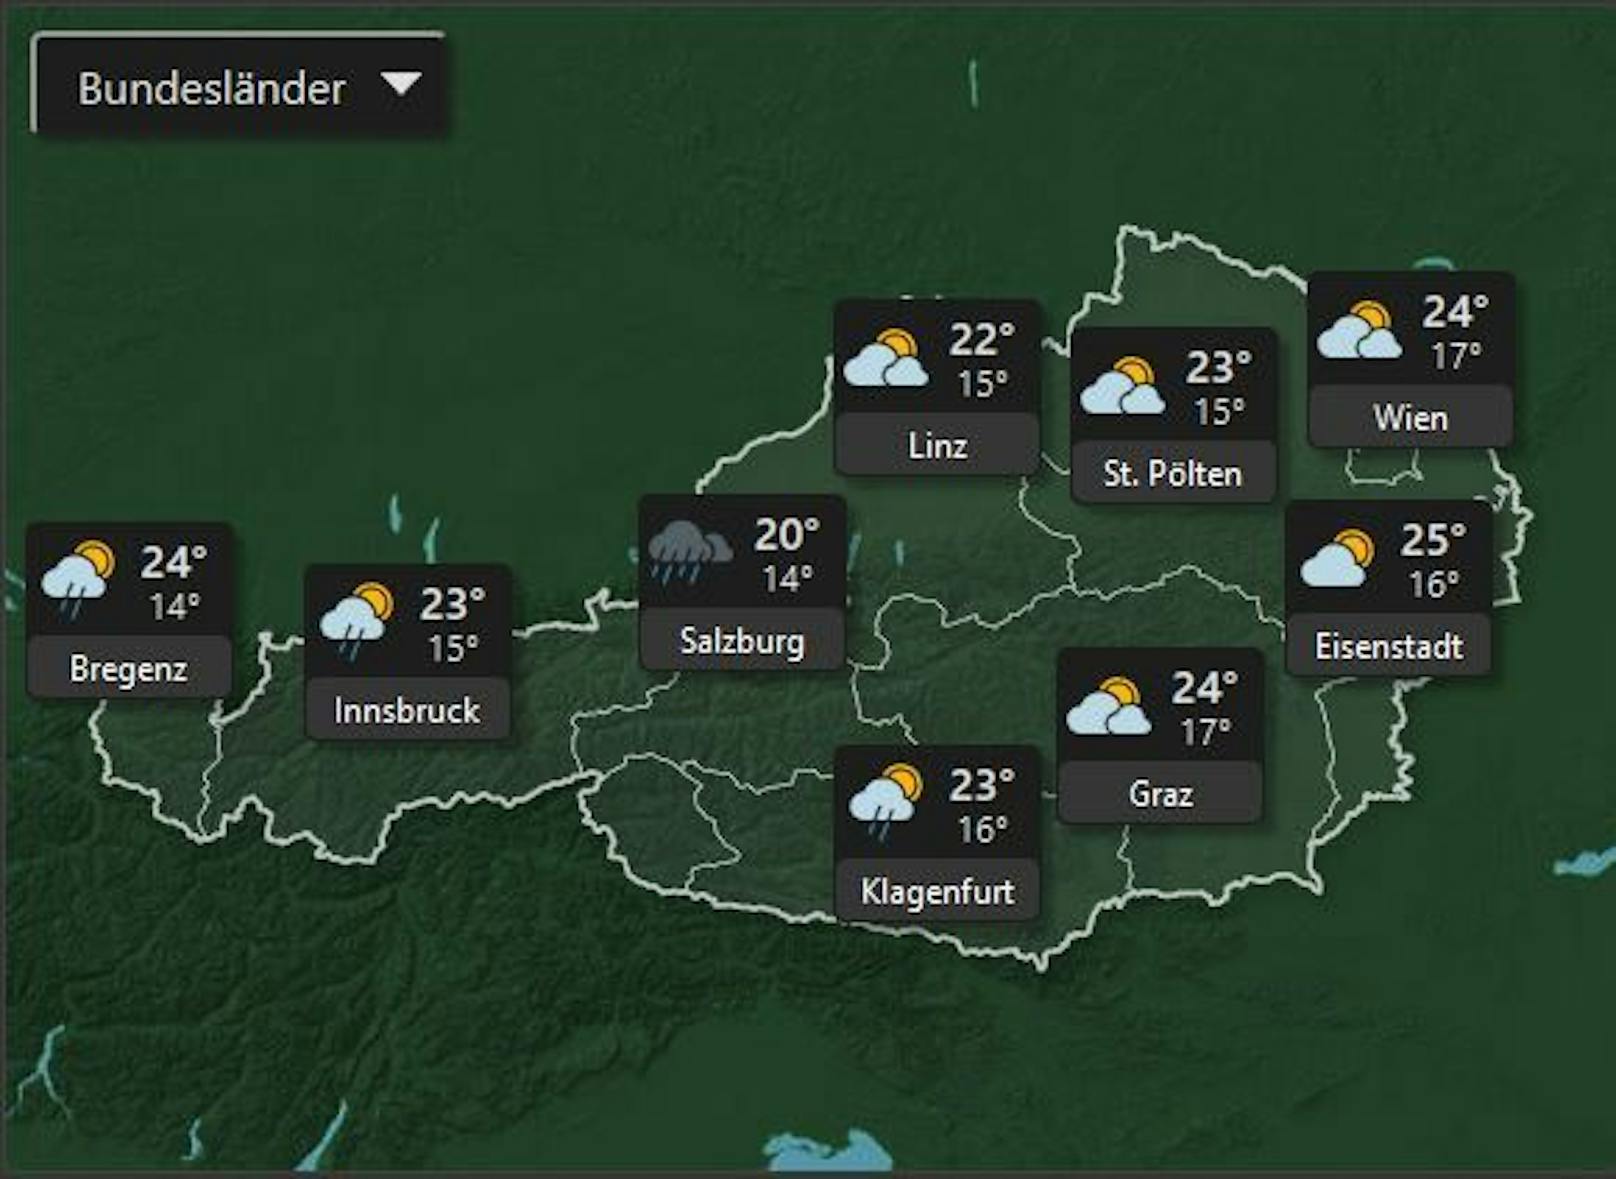 Das Wetter nächsten Montag, dem 11 Juli ist gleichmäßig in ganz Österreich mit Temperaturen bis zu 25° und vereinzelten Regenschauern.&nbsp;